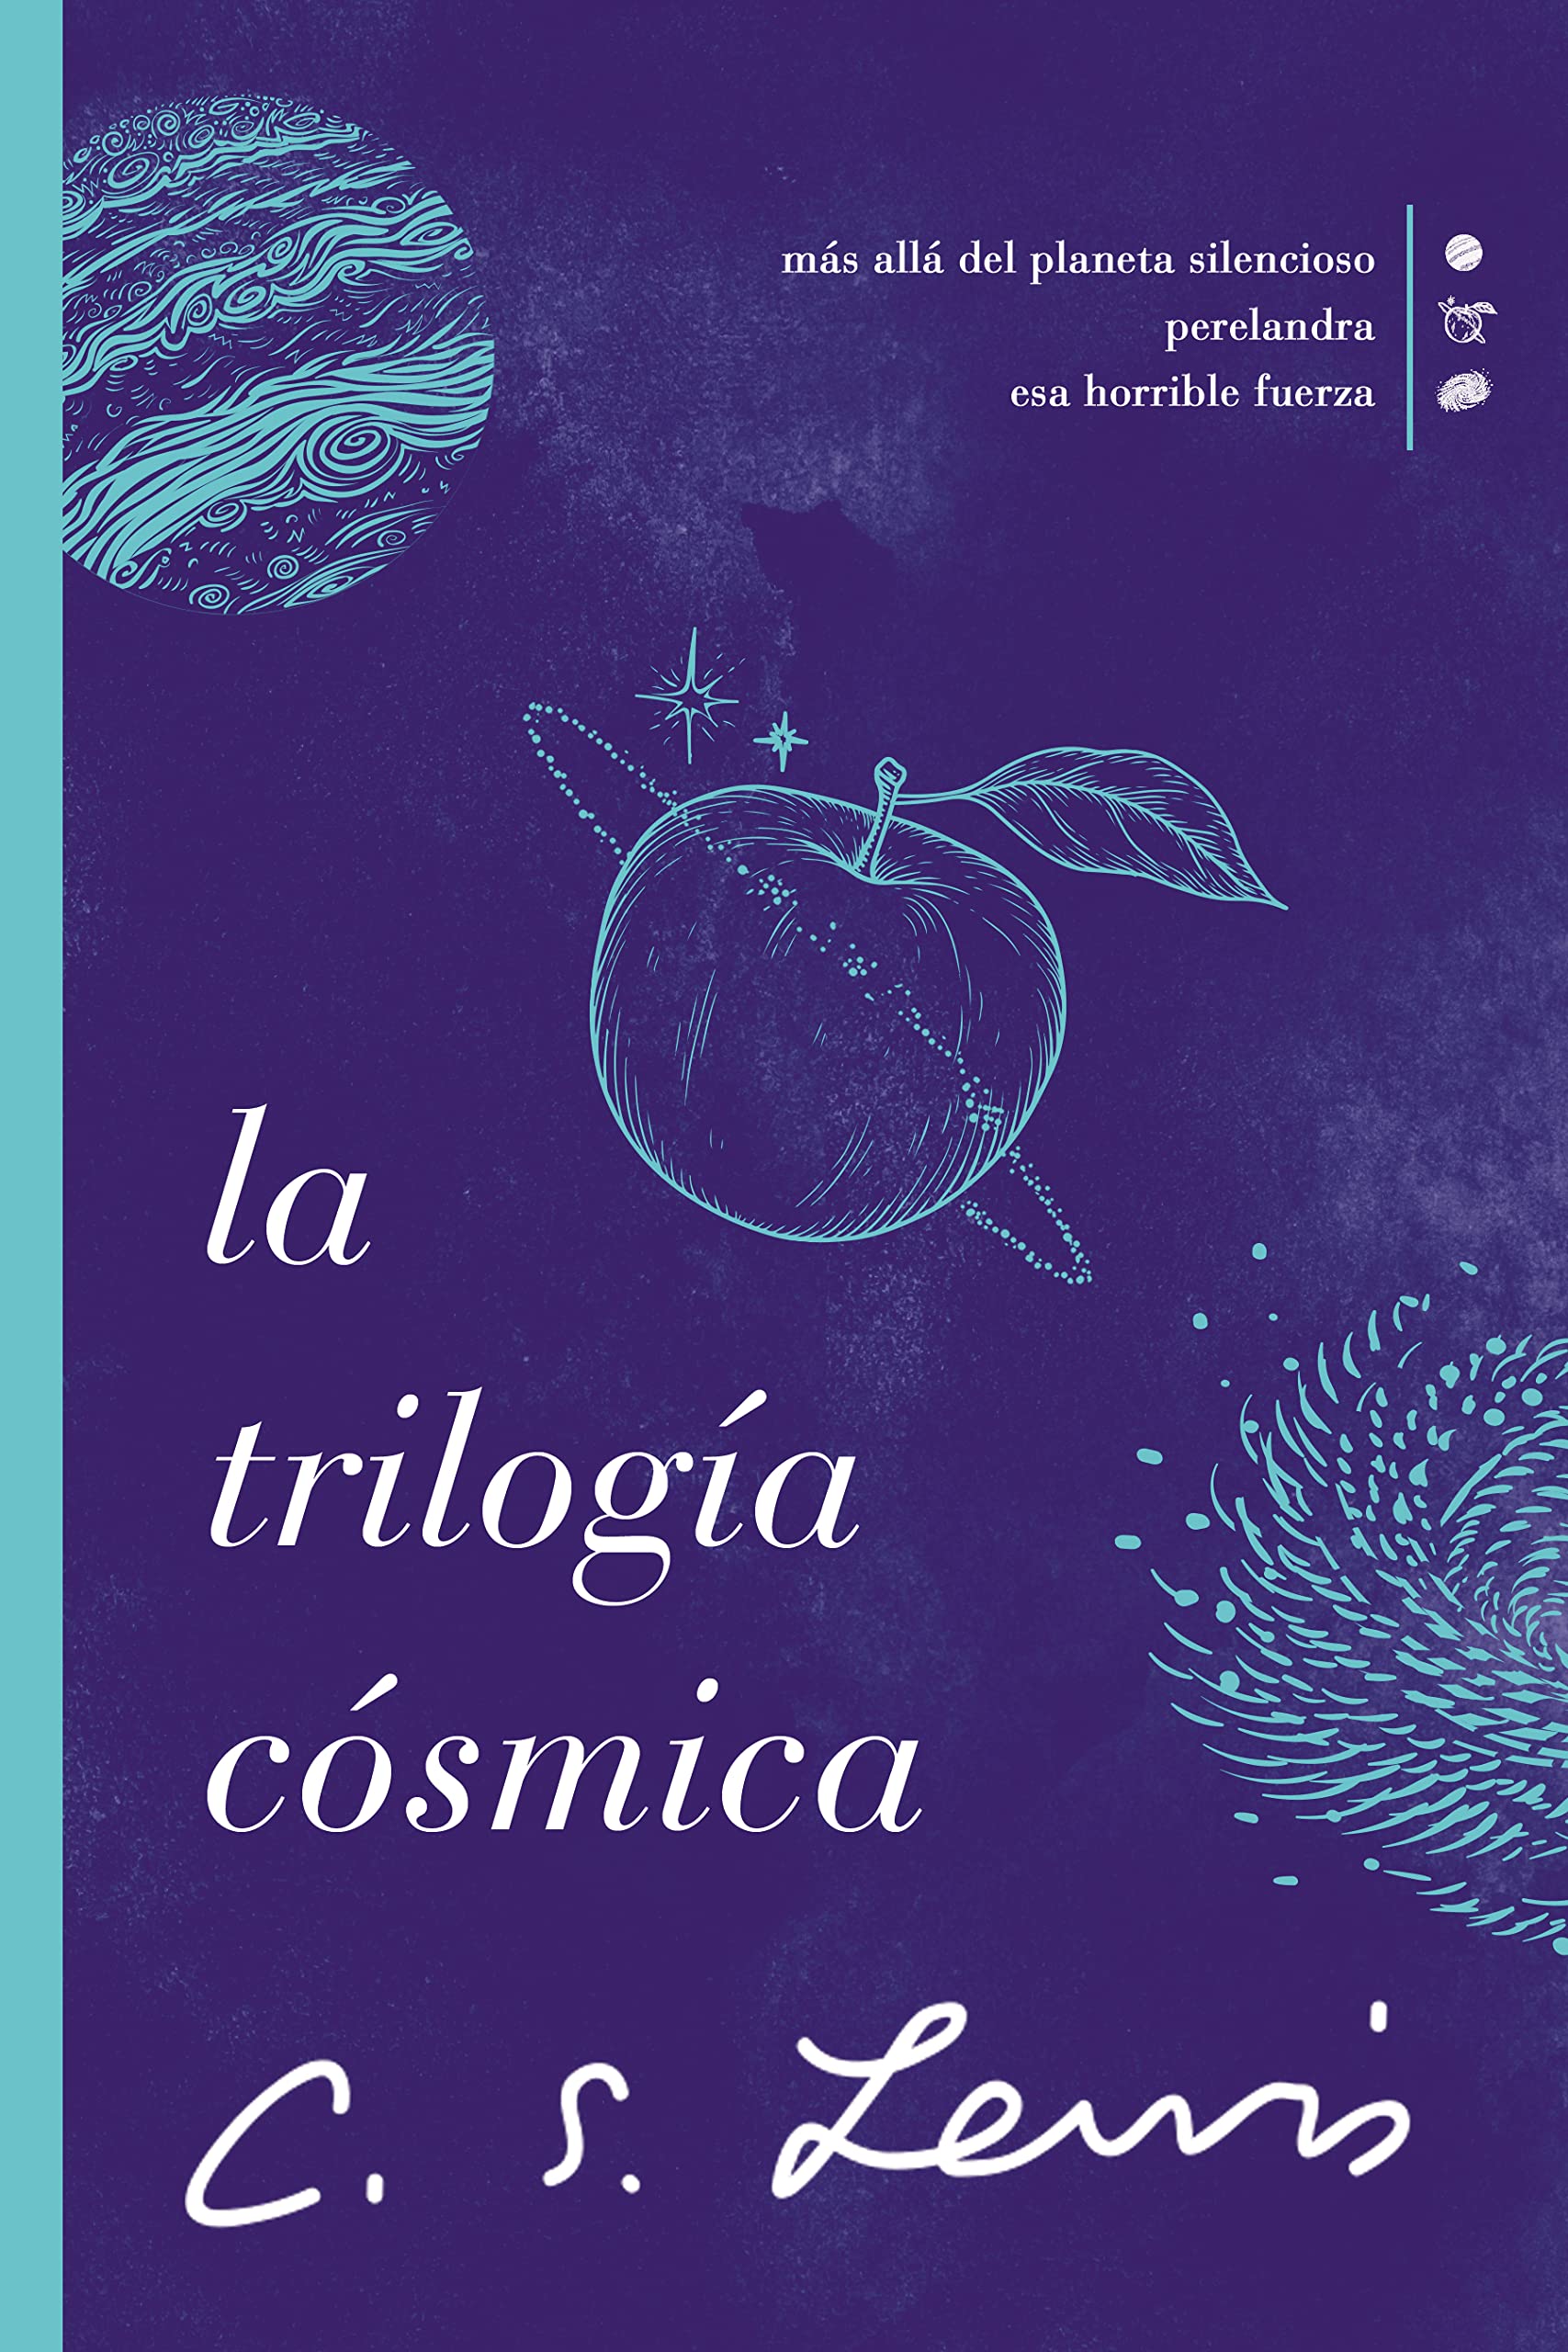 La Trilogía Cósmica - Librería Libros Cristianos - Libro